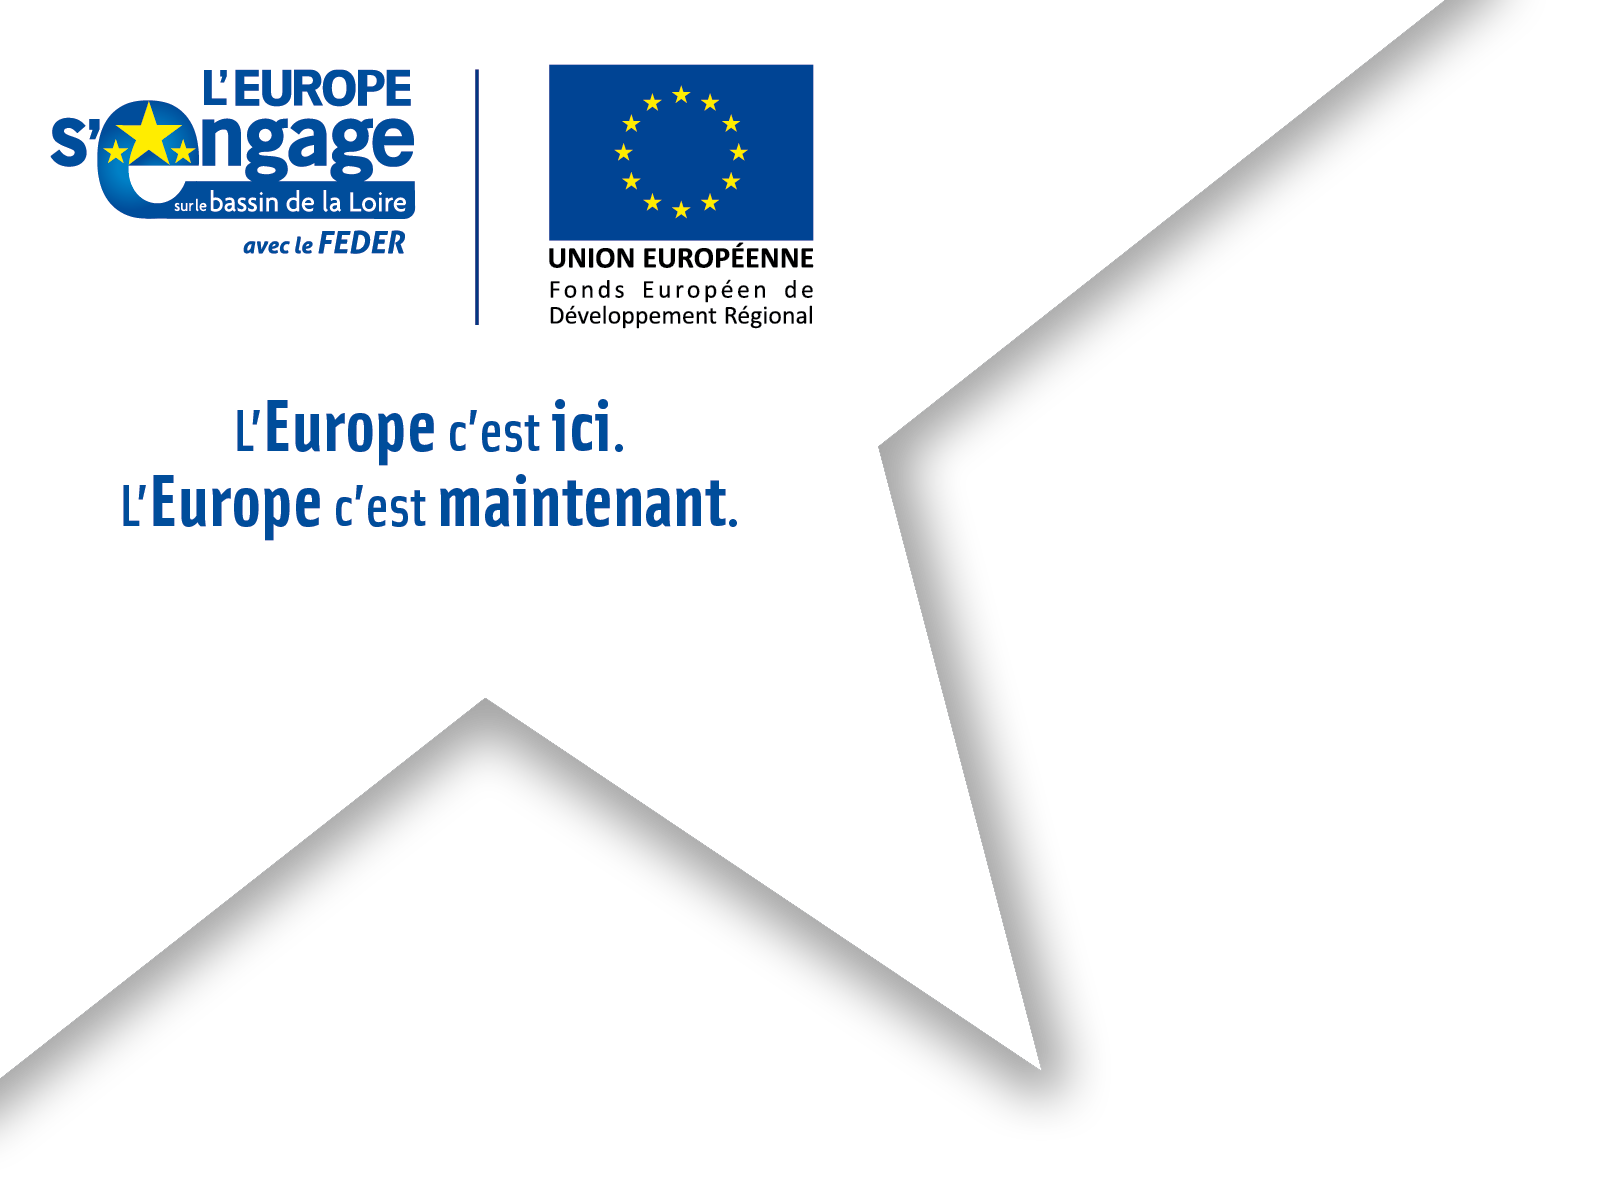 L'Europe s'engage sur le bassin de la Loire avec le feder (logo) -Union européenne, fonds de développement régional (logo) - L'europe c'est ici - L'Europe c'est maintenant